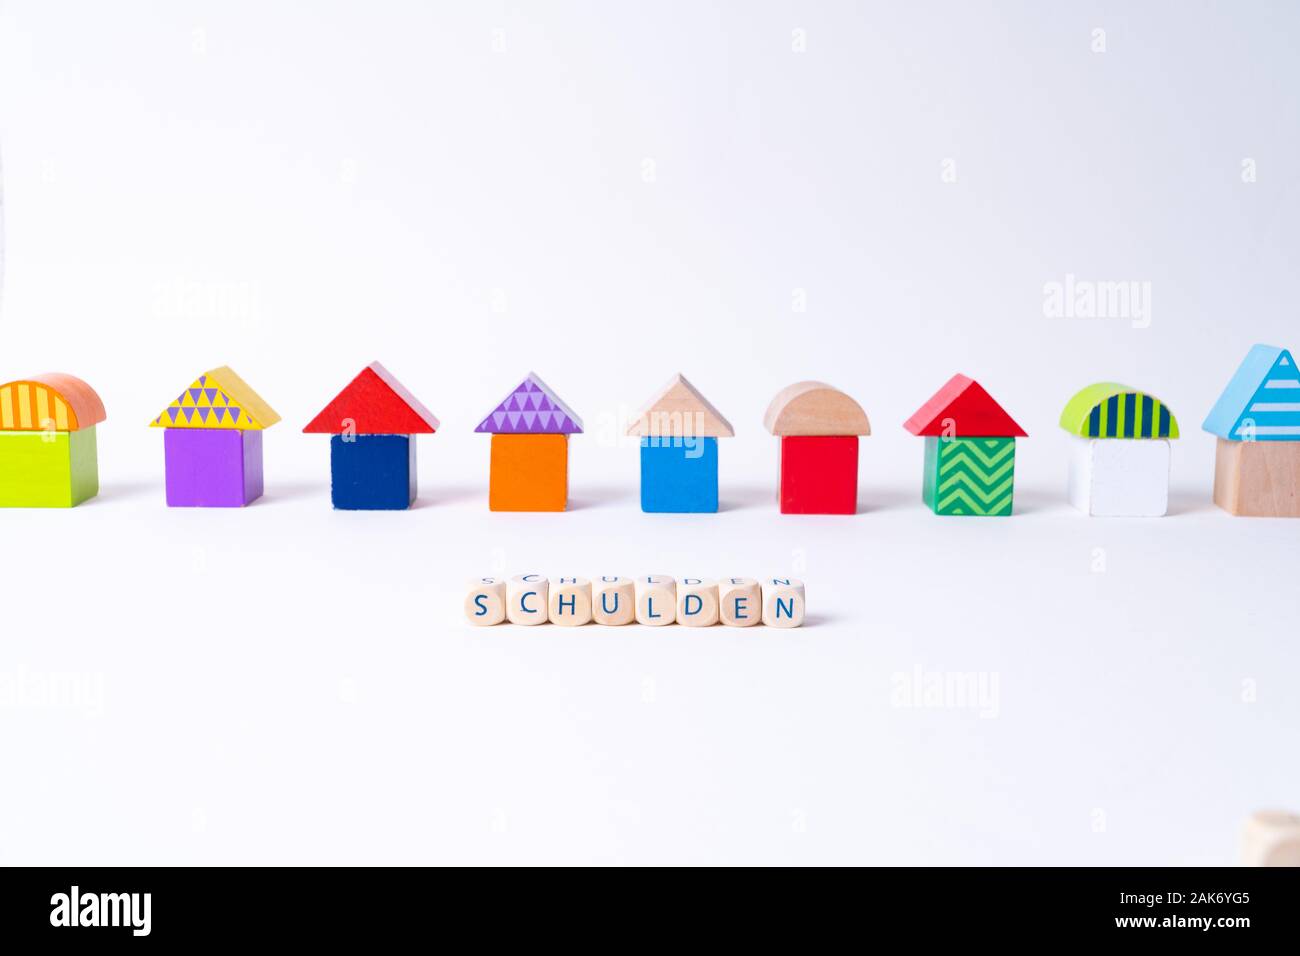 Glaçons avec des lettres pour dire 'Schulden", le mot allemand pour dette en face d'une rangée de maisons construites de blocs de jouets Jouets colorés Banque D'Images